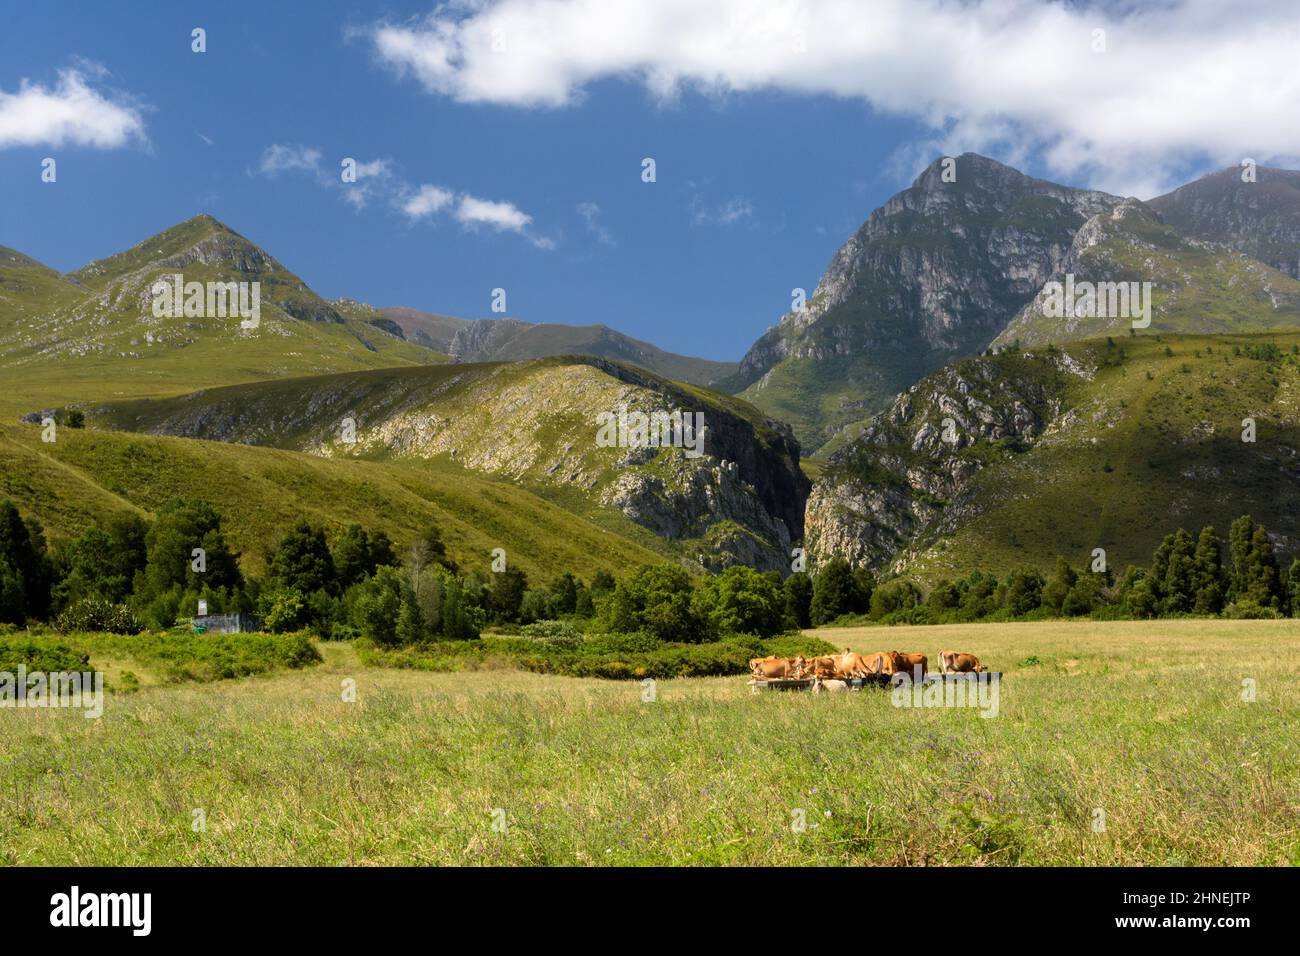 Vaches dans les prairies avec des montagnes derrière Banque D'Images